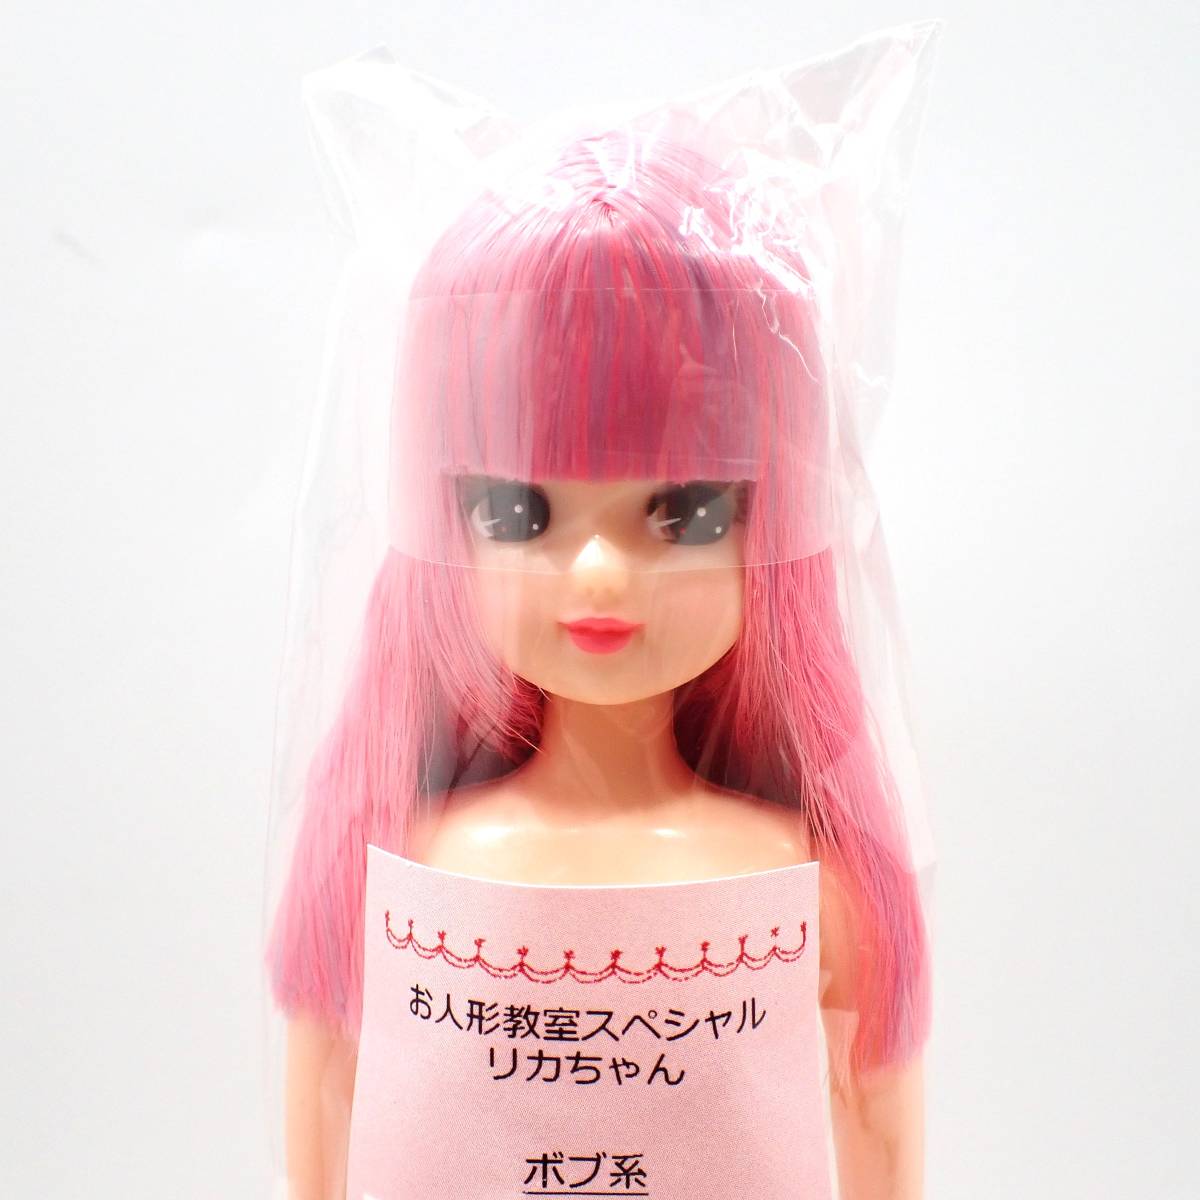 リカちゃんキャッスル☆お人形教室 スペシャルリカちゃん 22cm ドール 人形 LICCA CASTLE 1433